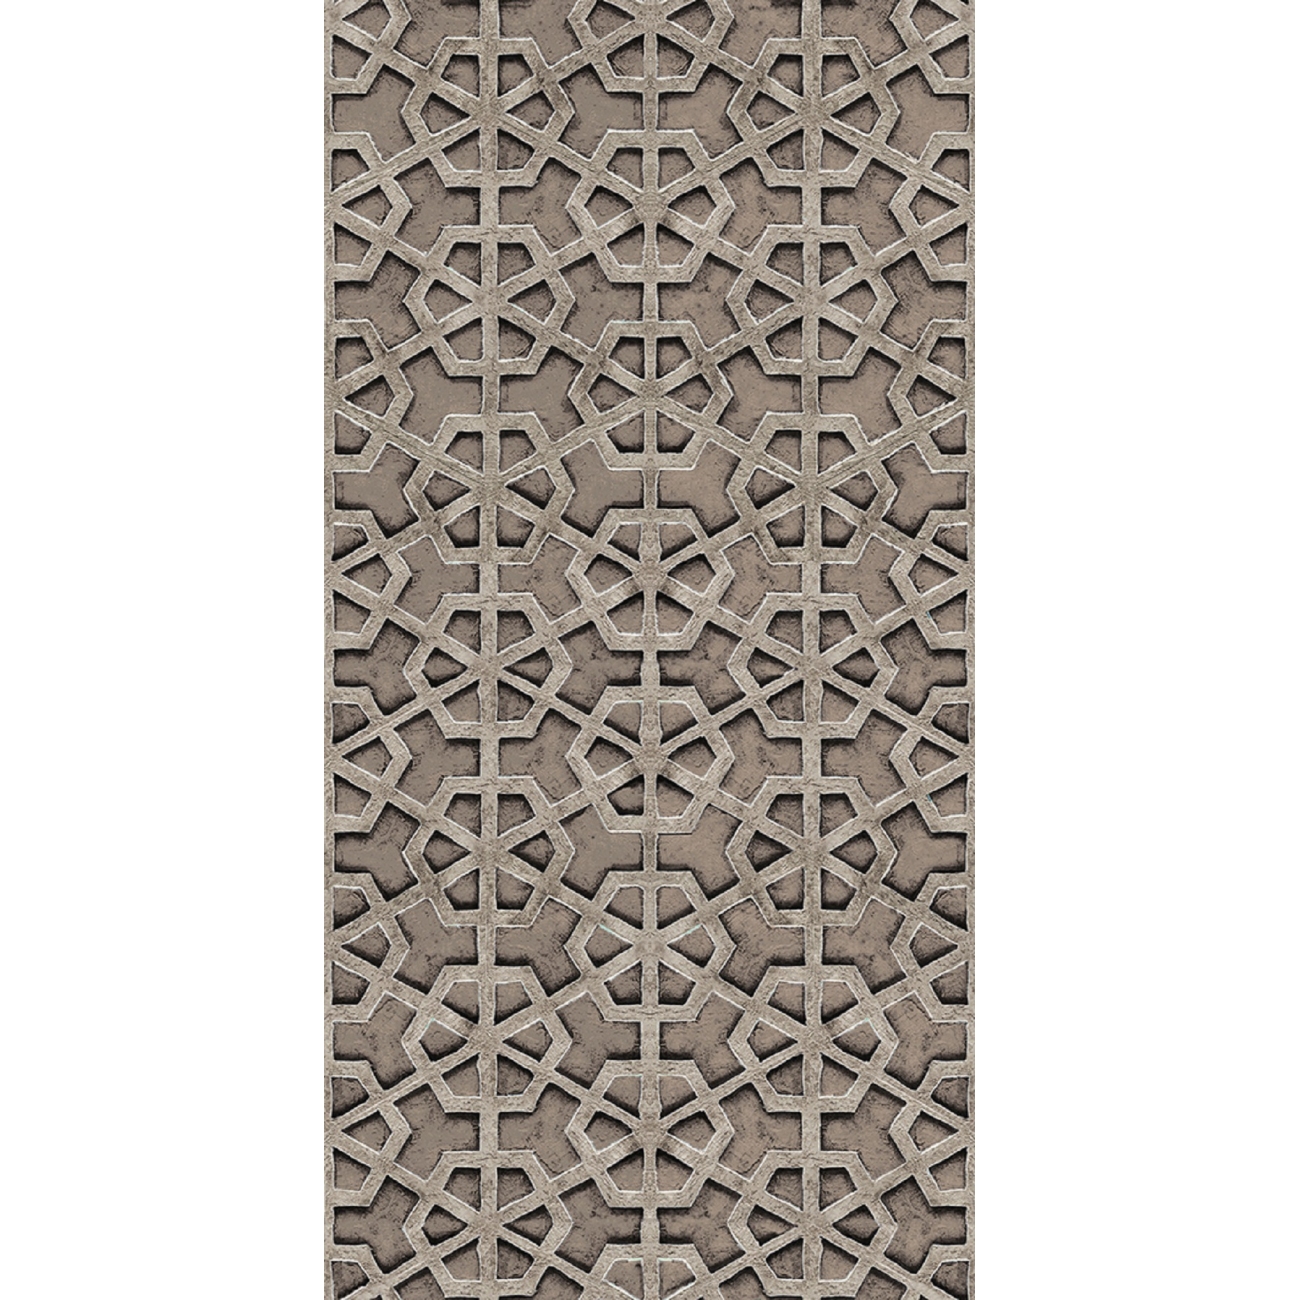 Wall & Decò Elements Eta TS Wallpaper